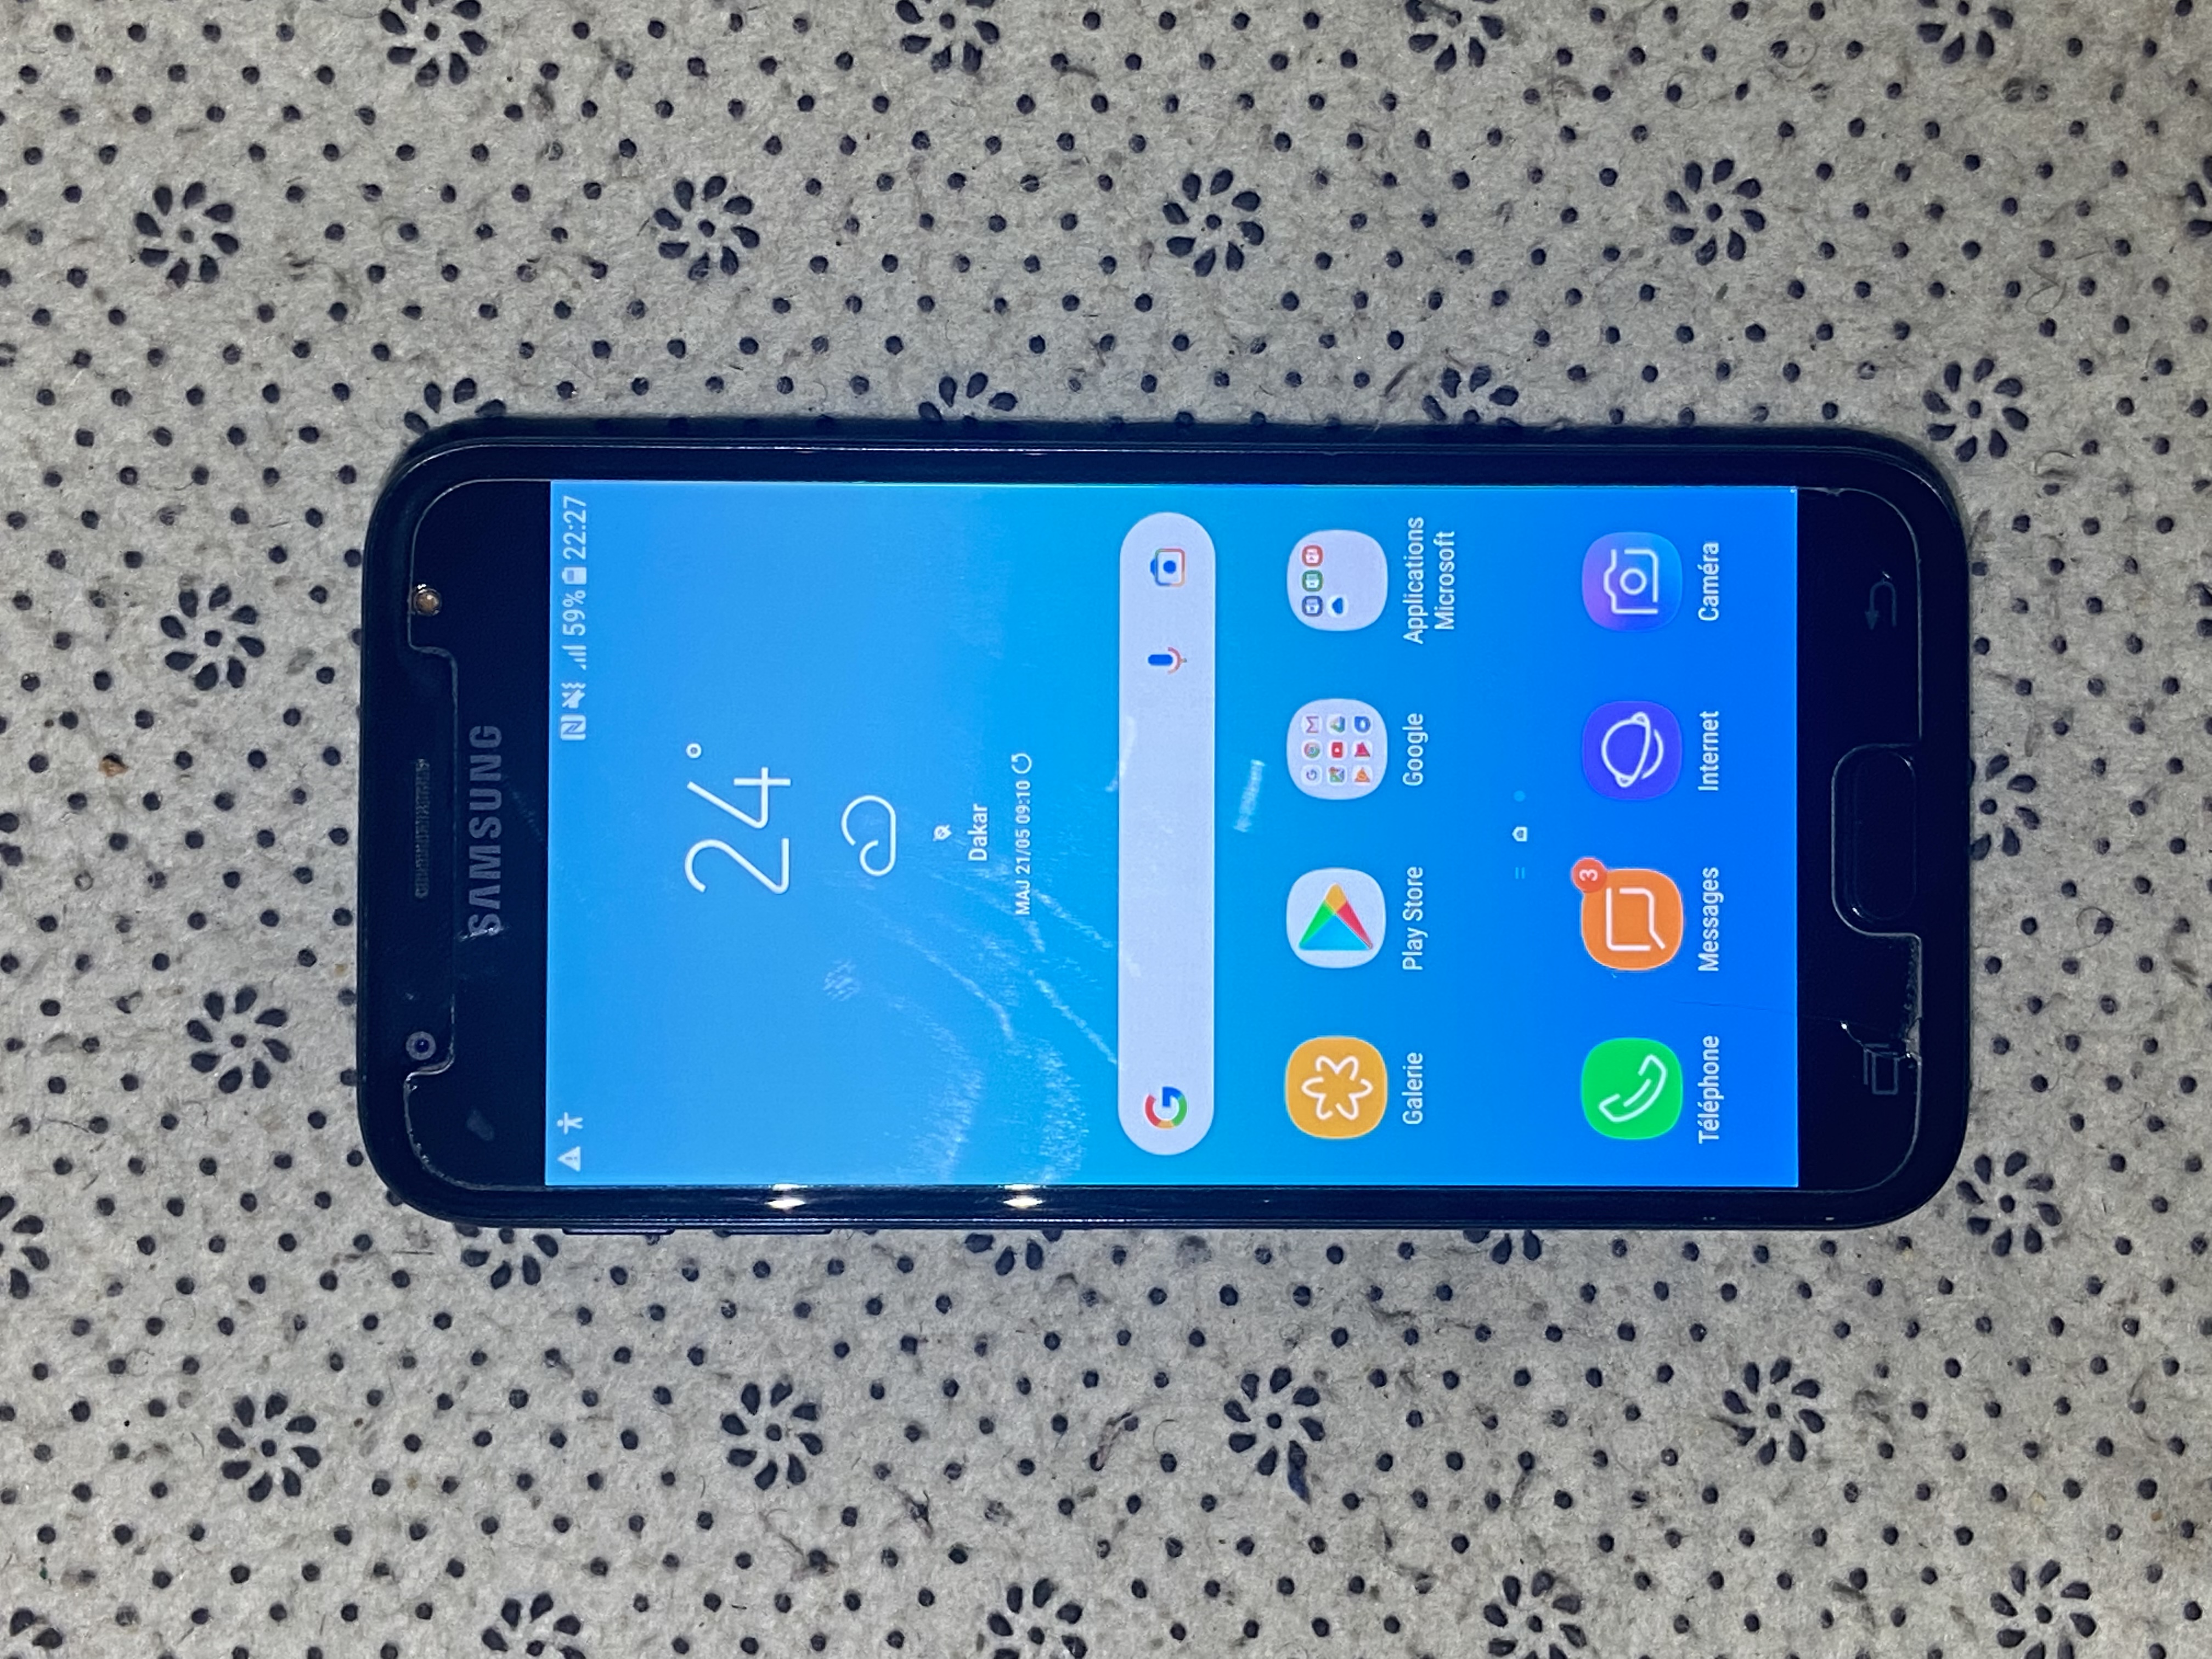 Samsung Galaxy J3 Je vends un Samsung J3 2017 tout
fonctionne pas de problème aucune
rayure aussi propre impeccable
Stockage 16giga
Ram 2 giga
Dual-sim prend 2 cartes sim